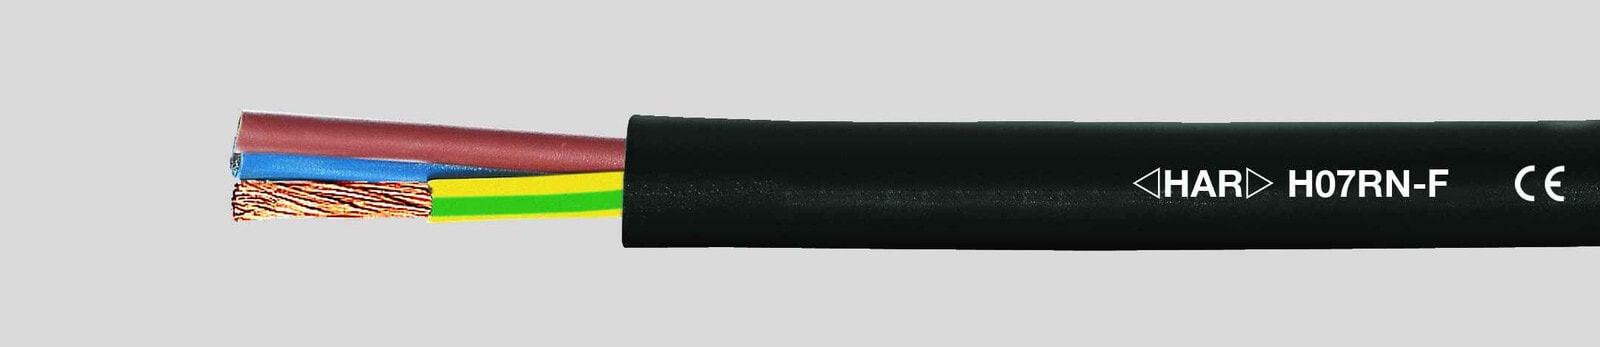 Helukabel 37045 - Low voltage cable - Black - Cooper - 1.5 mm² - 58 kg/km - -25 - 60 °C